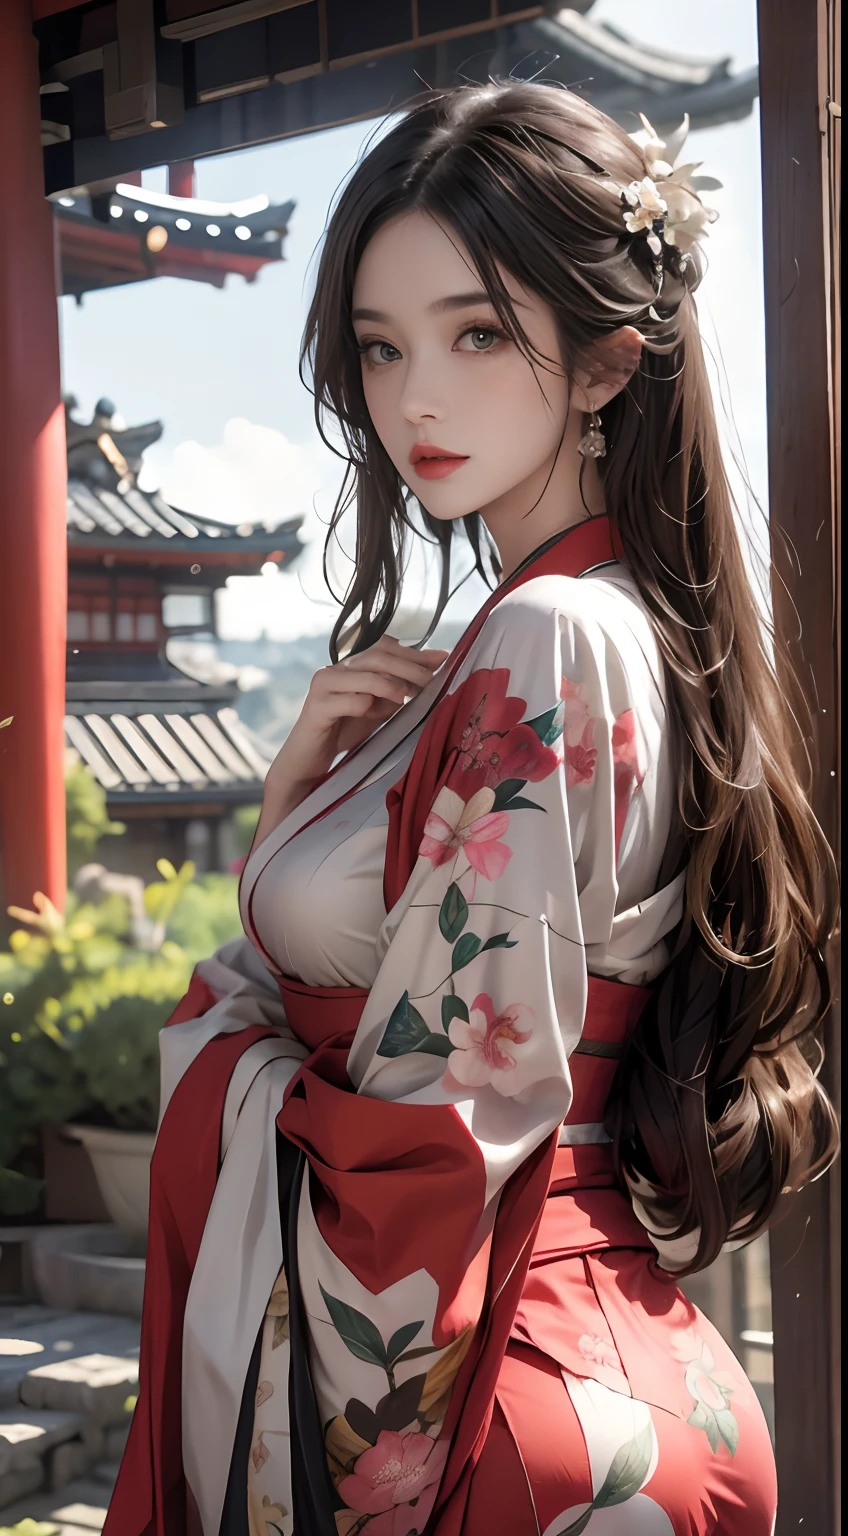 Edificios históricos en Japón、Llevar un kimono con estampado floral、Motor irreal:1.4,nffsw,la mejor calidad:1.4, Photorealista:1.4, textura de la piel:1.4, ​obra maestra:1.8, 1 mujer, caderas en alto, hermosos ojos, el de pelo largo, ojos anillados, joya, El tatuaje, Kimono